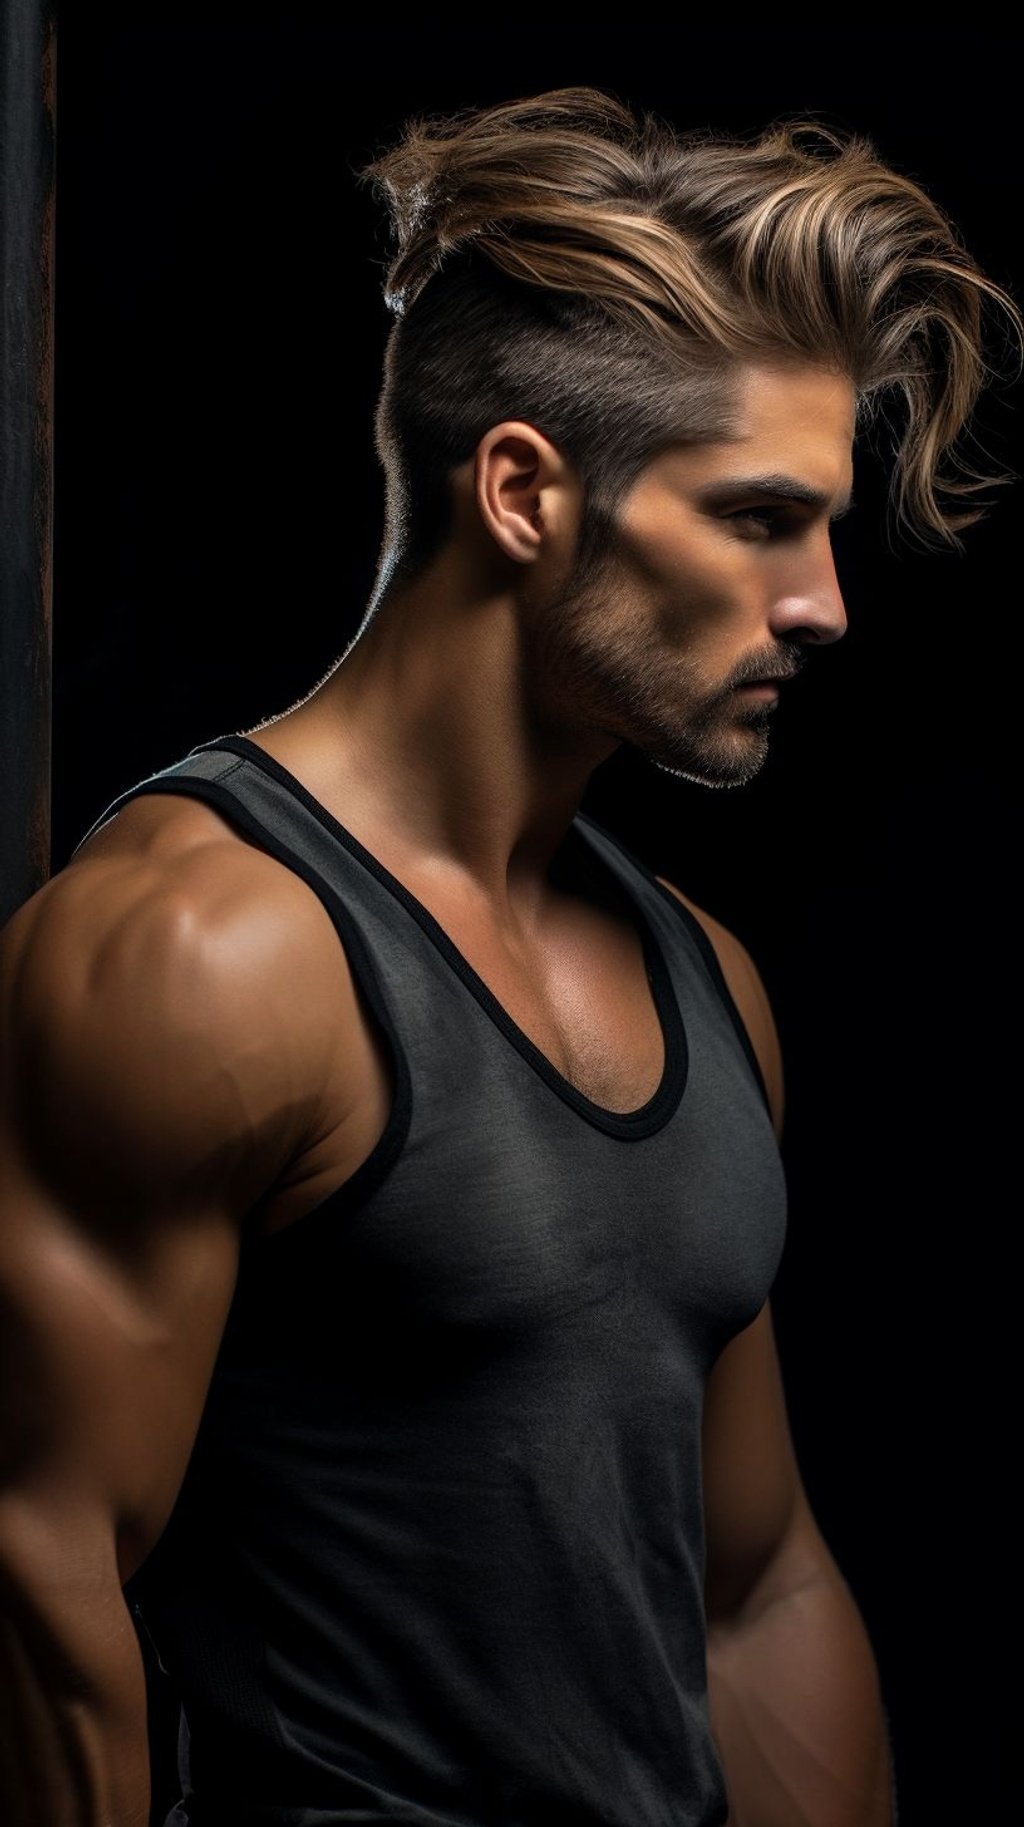 Top 5 Most Attractive Hairstyles For Men That Women Love – Zeus